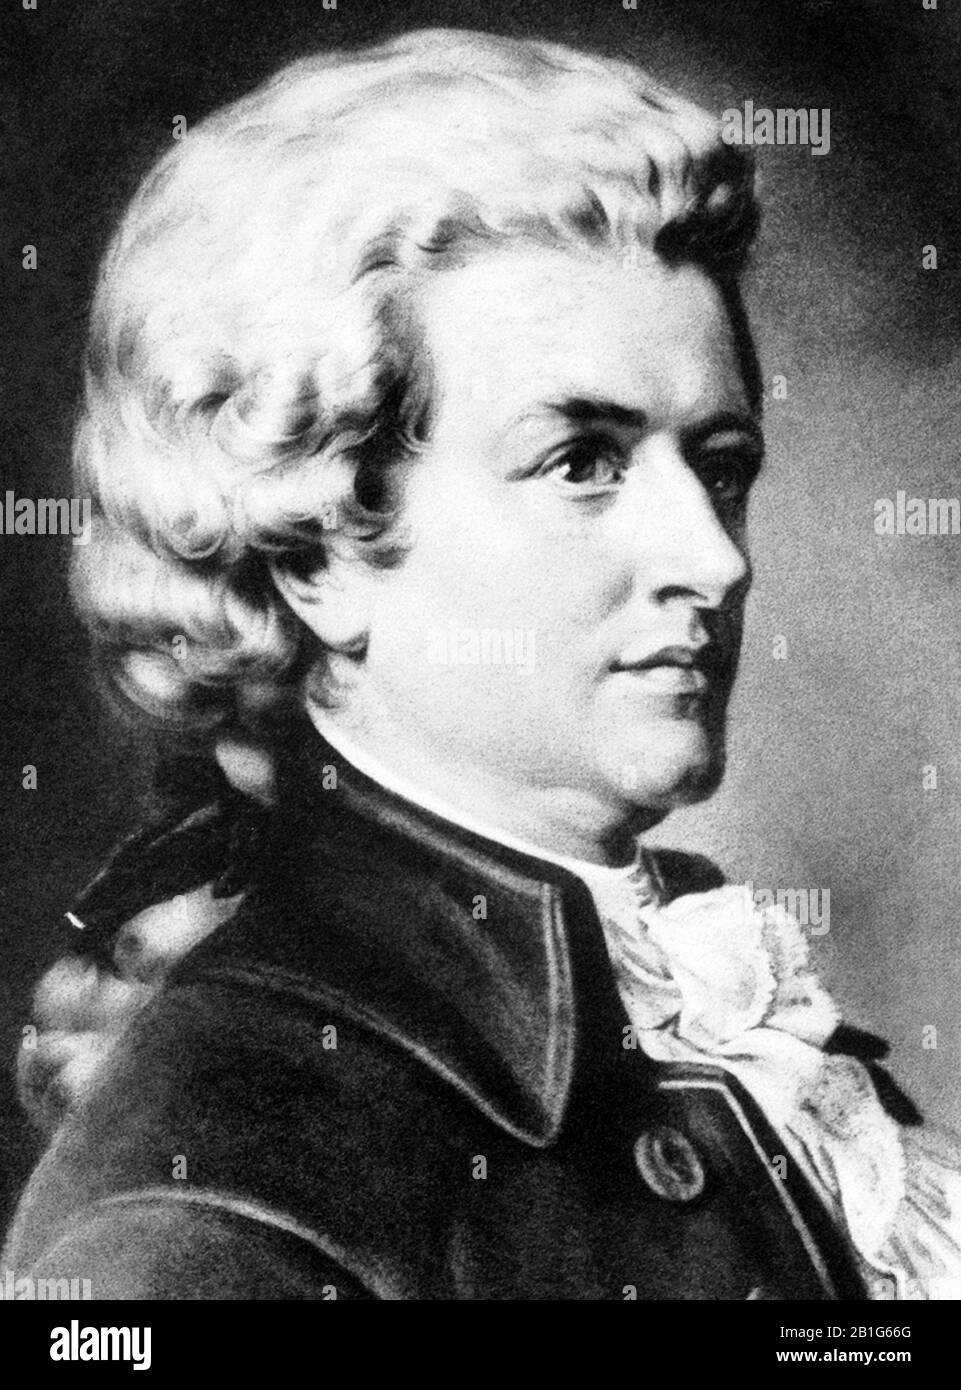 Ritratto d'epoca del compositore Wolfgang Amadeus Mozart (1756 – 1791). Dettaglio da una stampa del 1902 di W L Haskell. Foto Stock